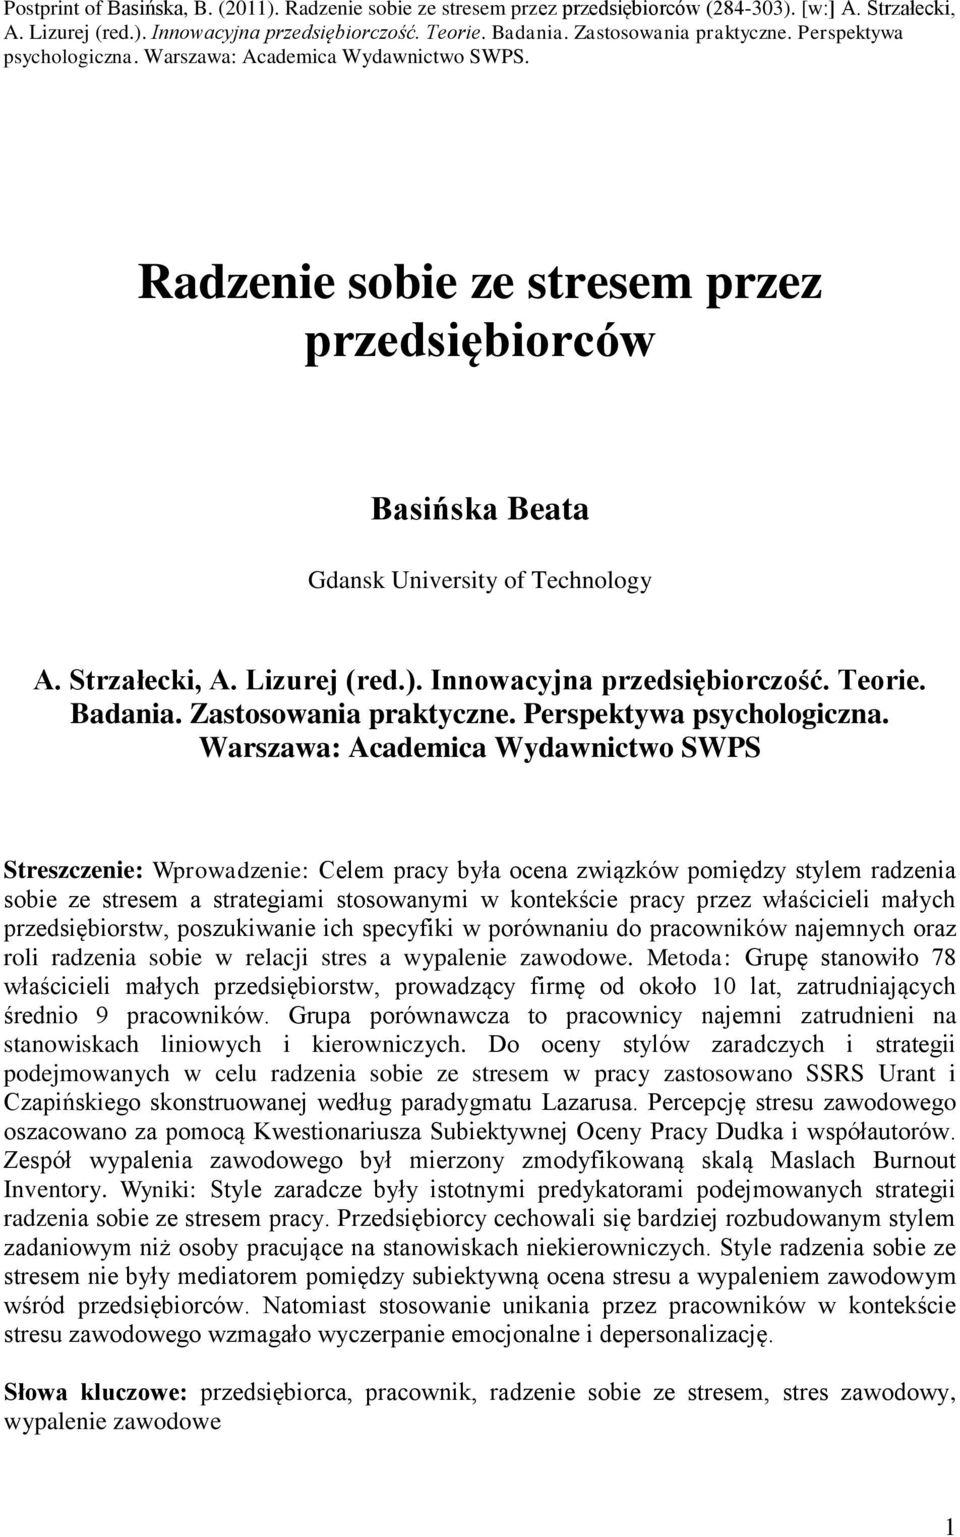 Strzałecki, A. Lizurej (red.). Innowacyjna przedsiębiorczość. Teorie. Badania. Zastosowania praktyczne. Perspektywa psychologiczna.